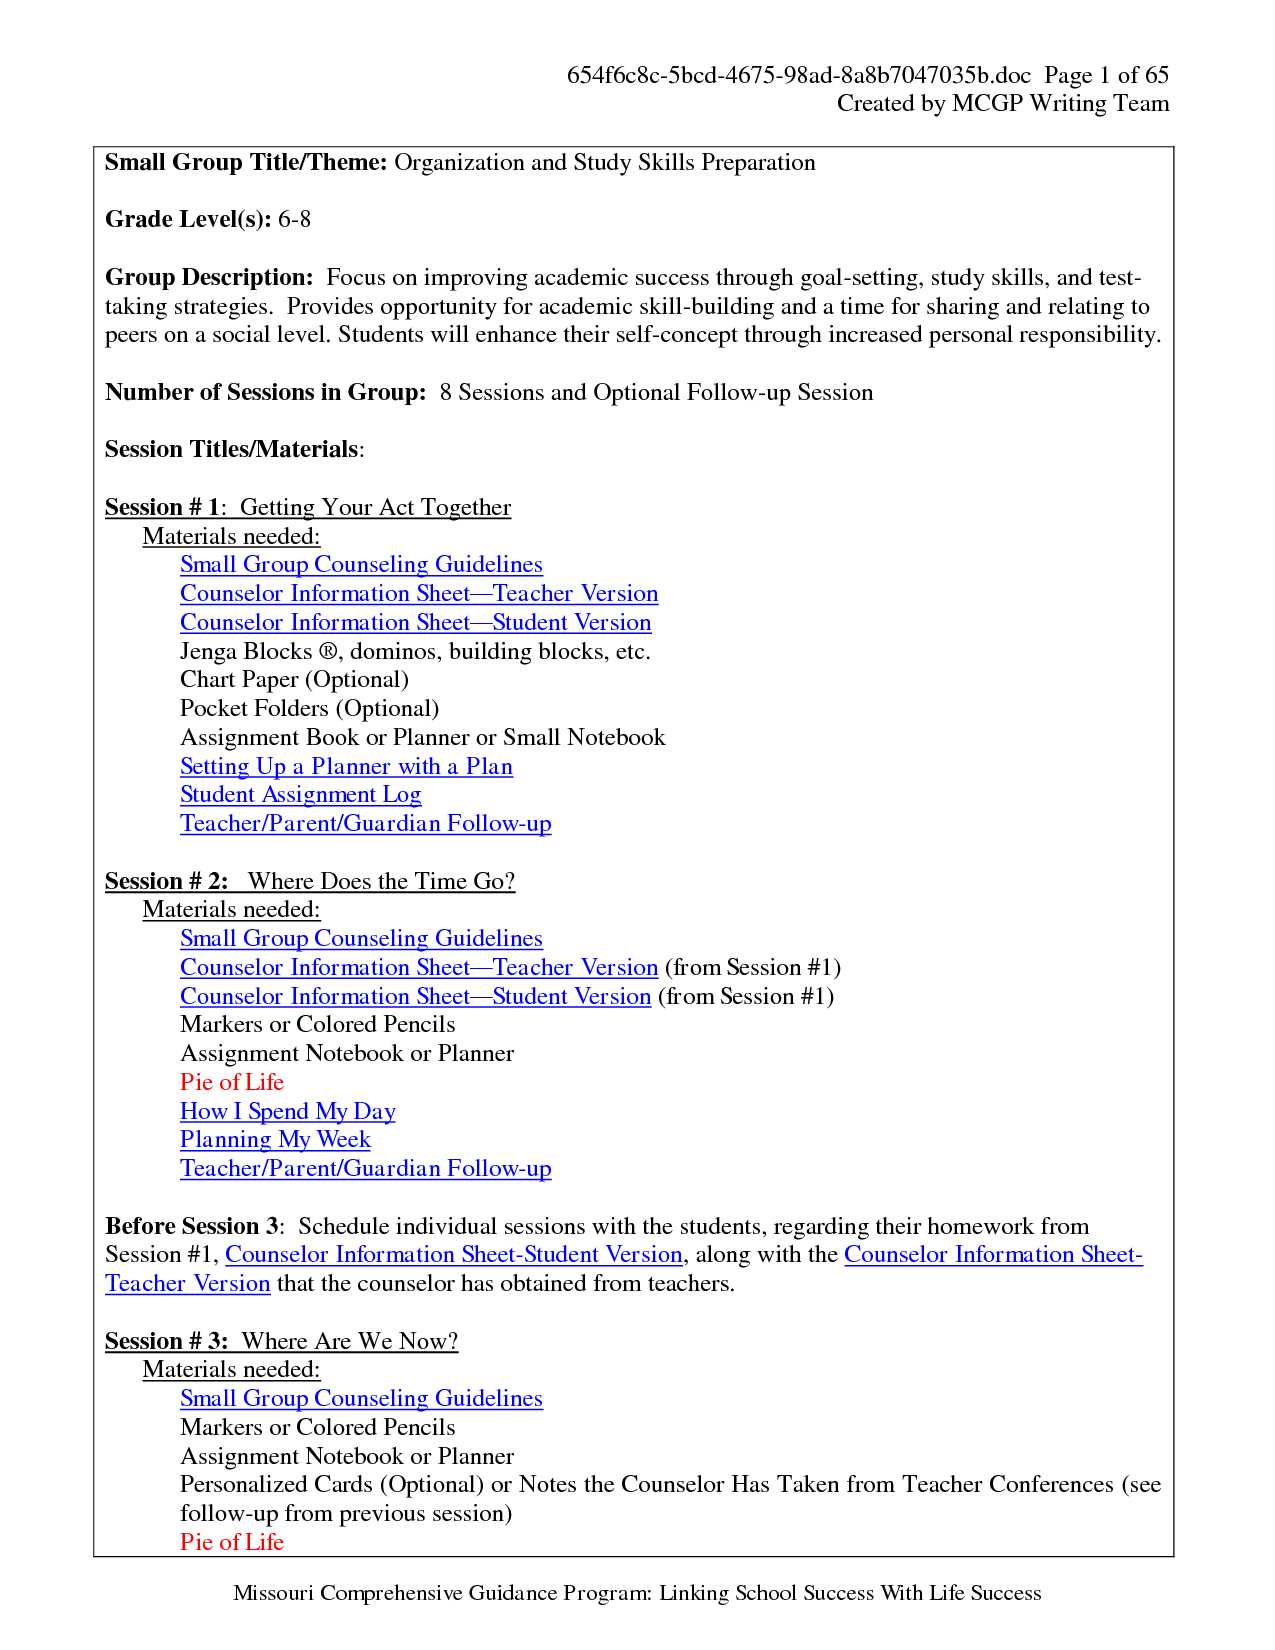 Social Skills Worksheets for Middle School Pdf together with Middle School Study Skills Worksheets Free Worksheets